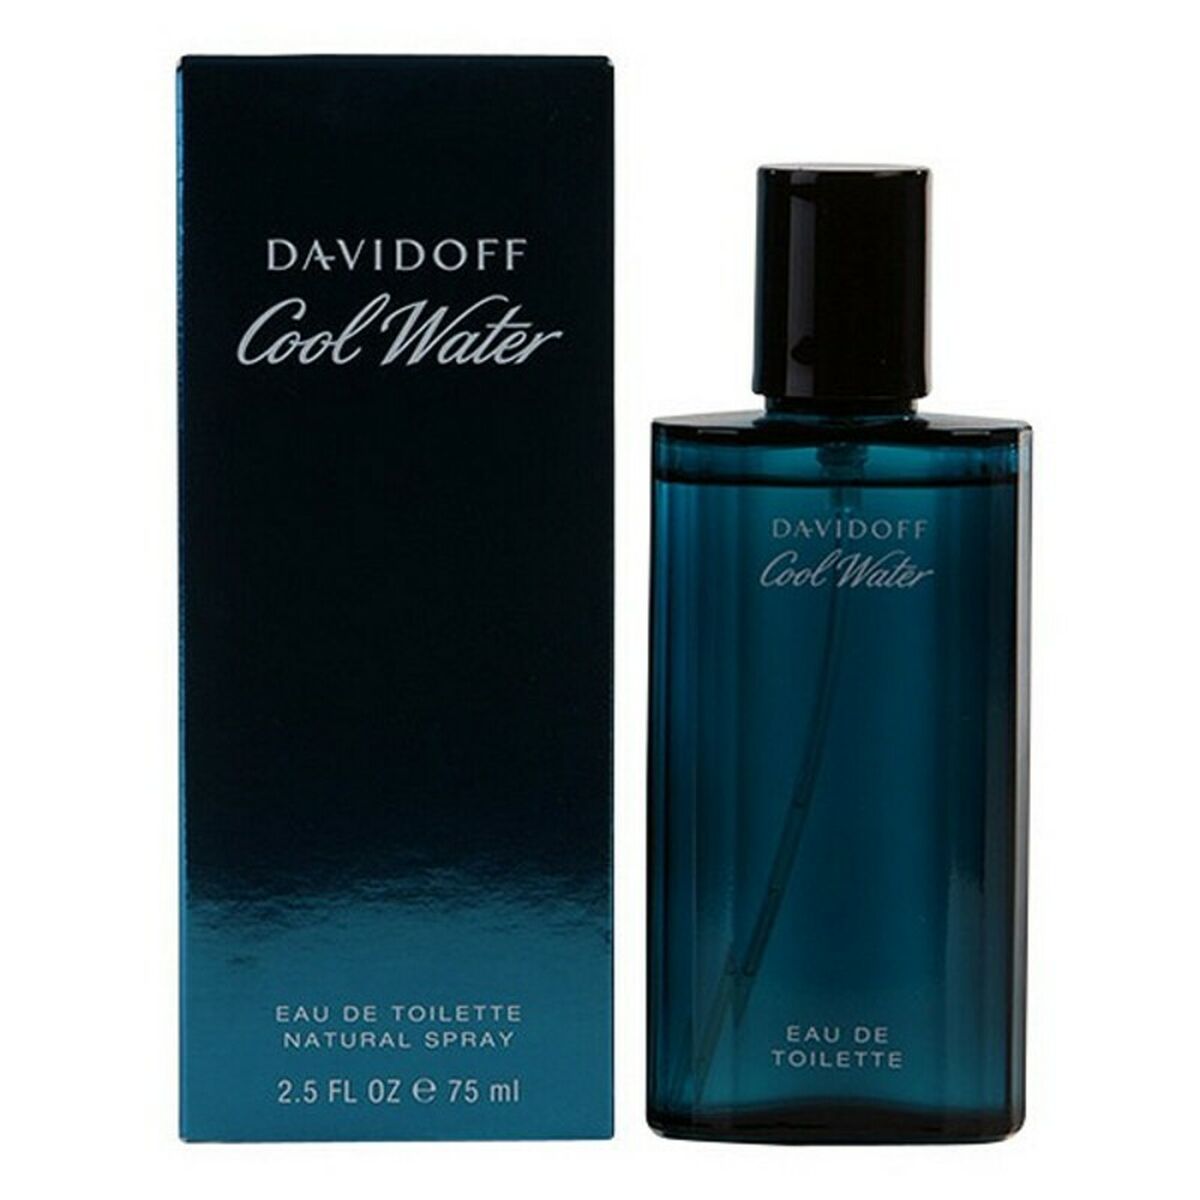 Parfum Homme Davidoff EDT Cool Water 75 ml